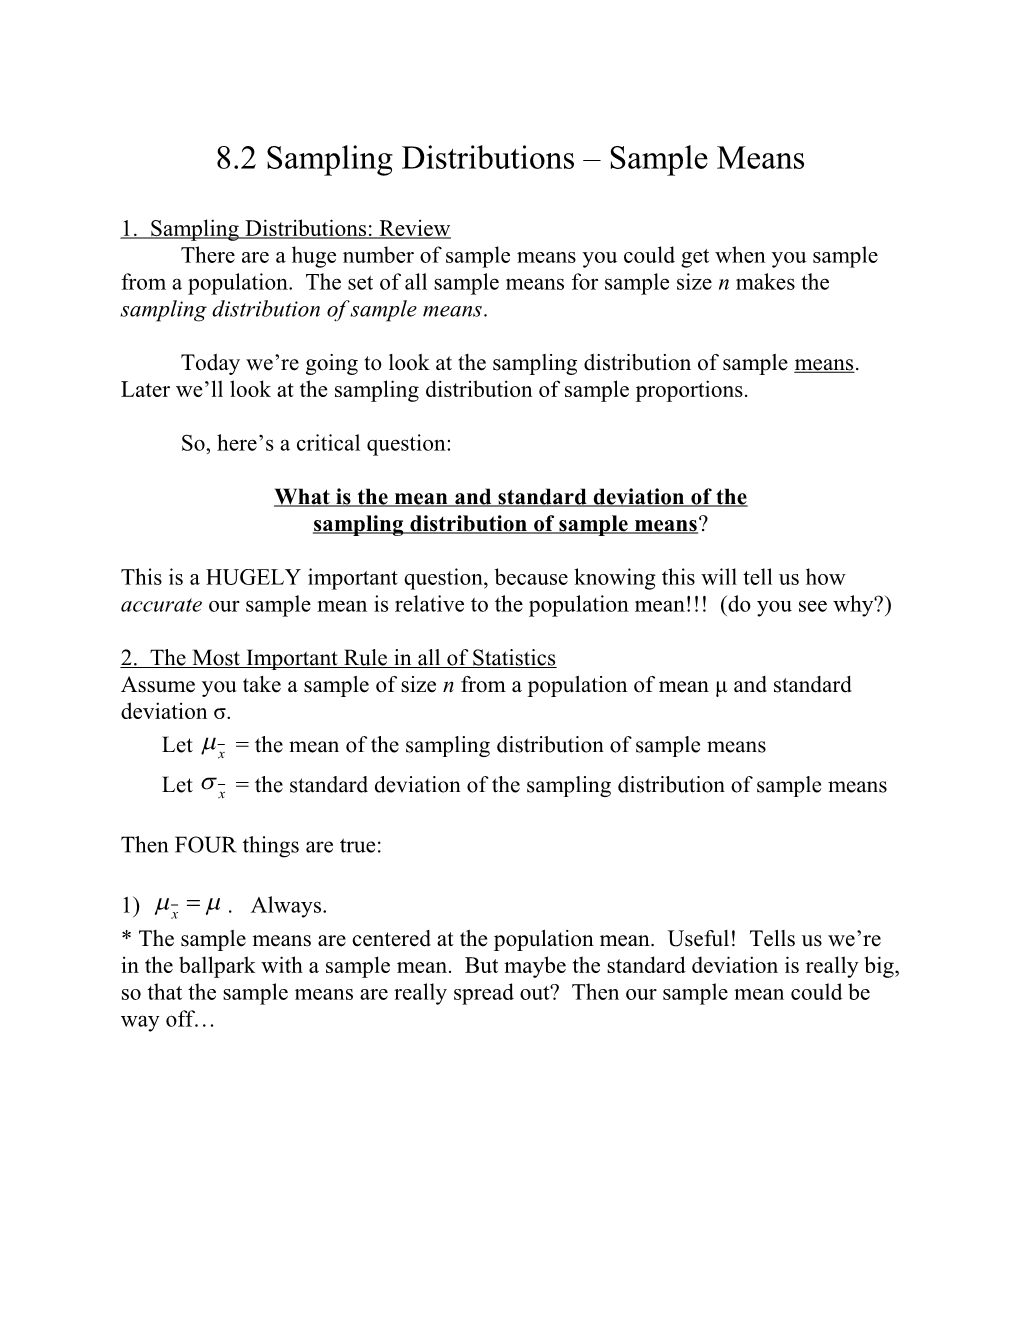 8.2 Sampling Distributions Sample Means